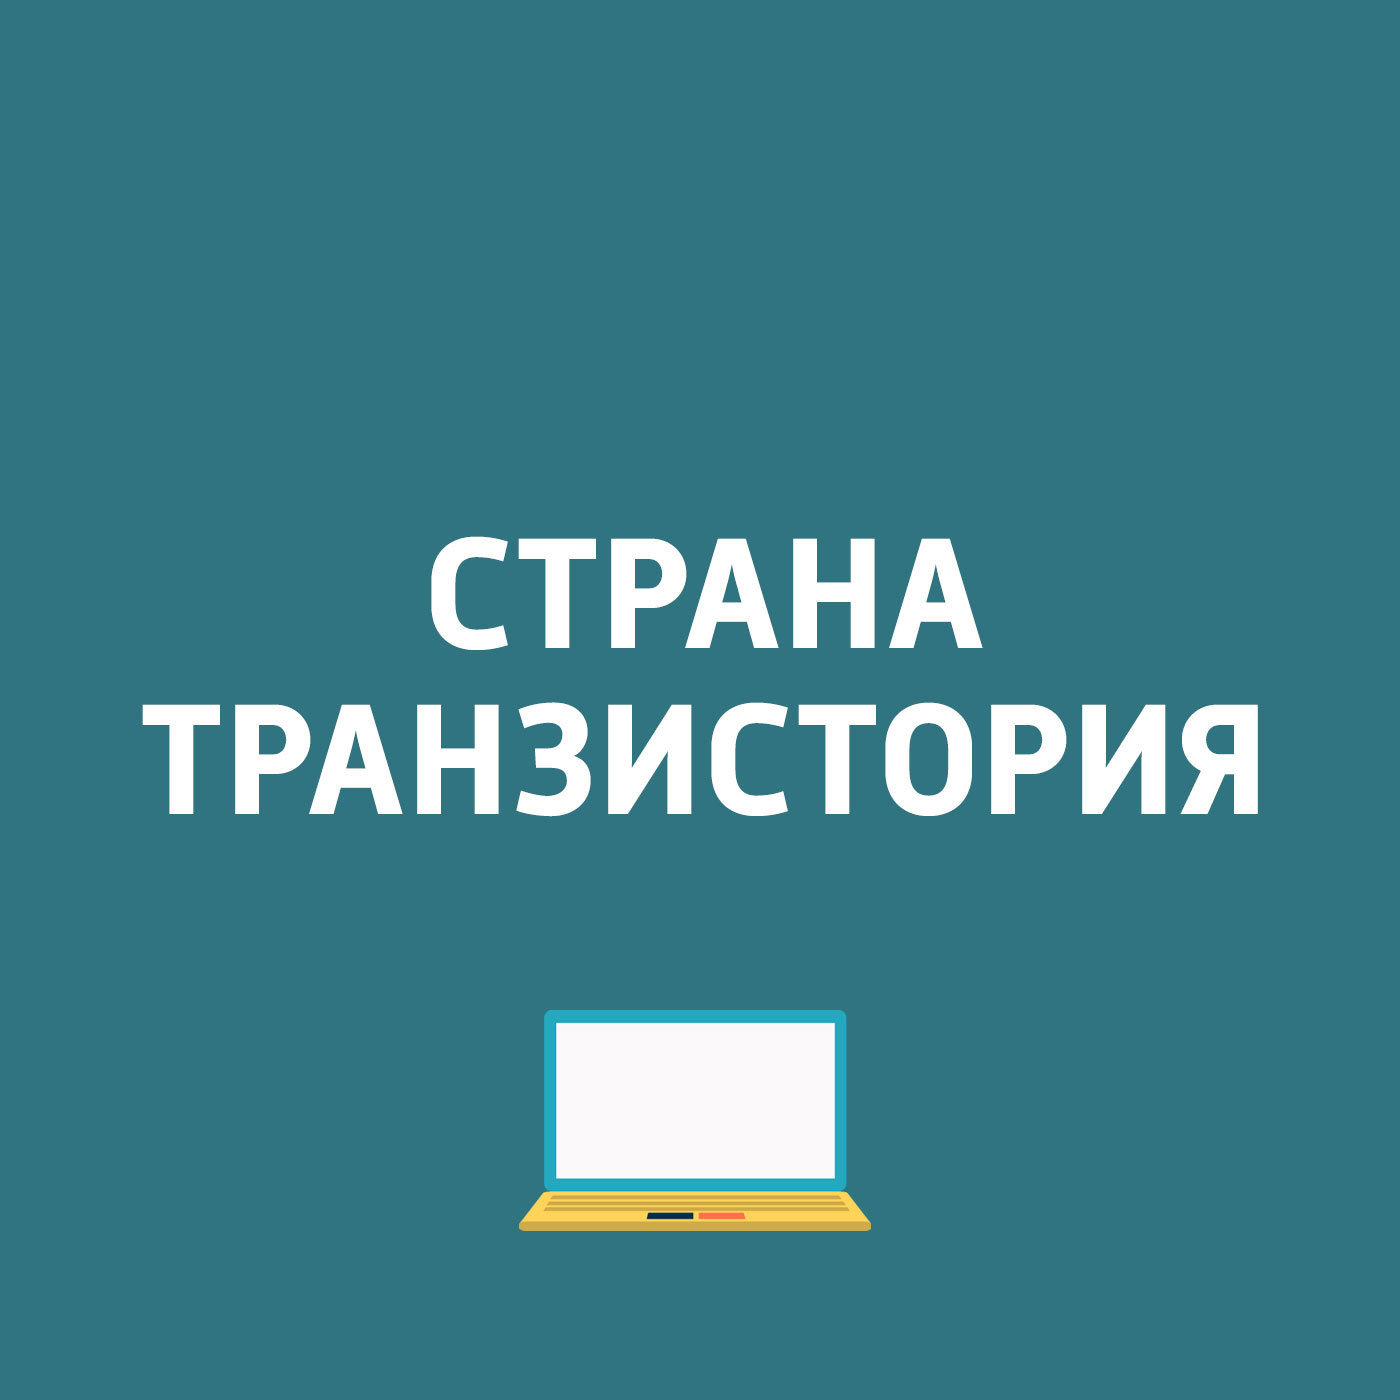 Googleиспользует нейросети для перевода с русского языка, Google play - 5 лет